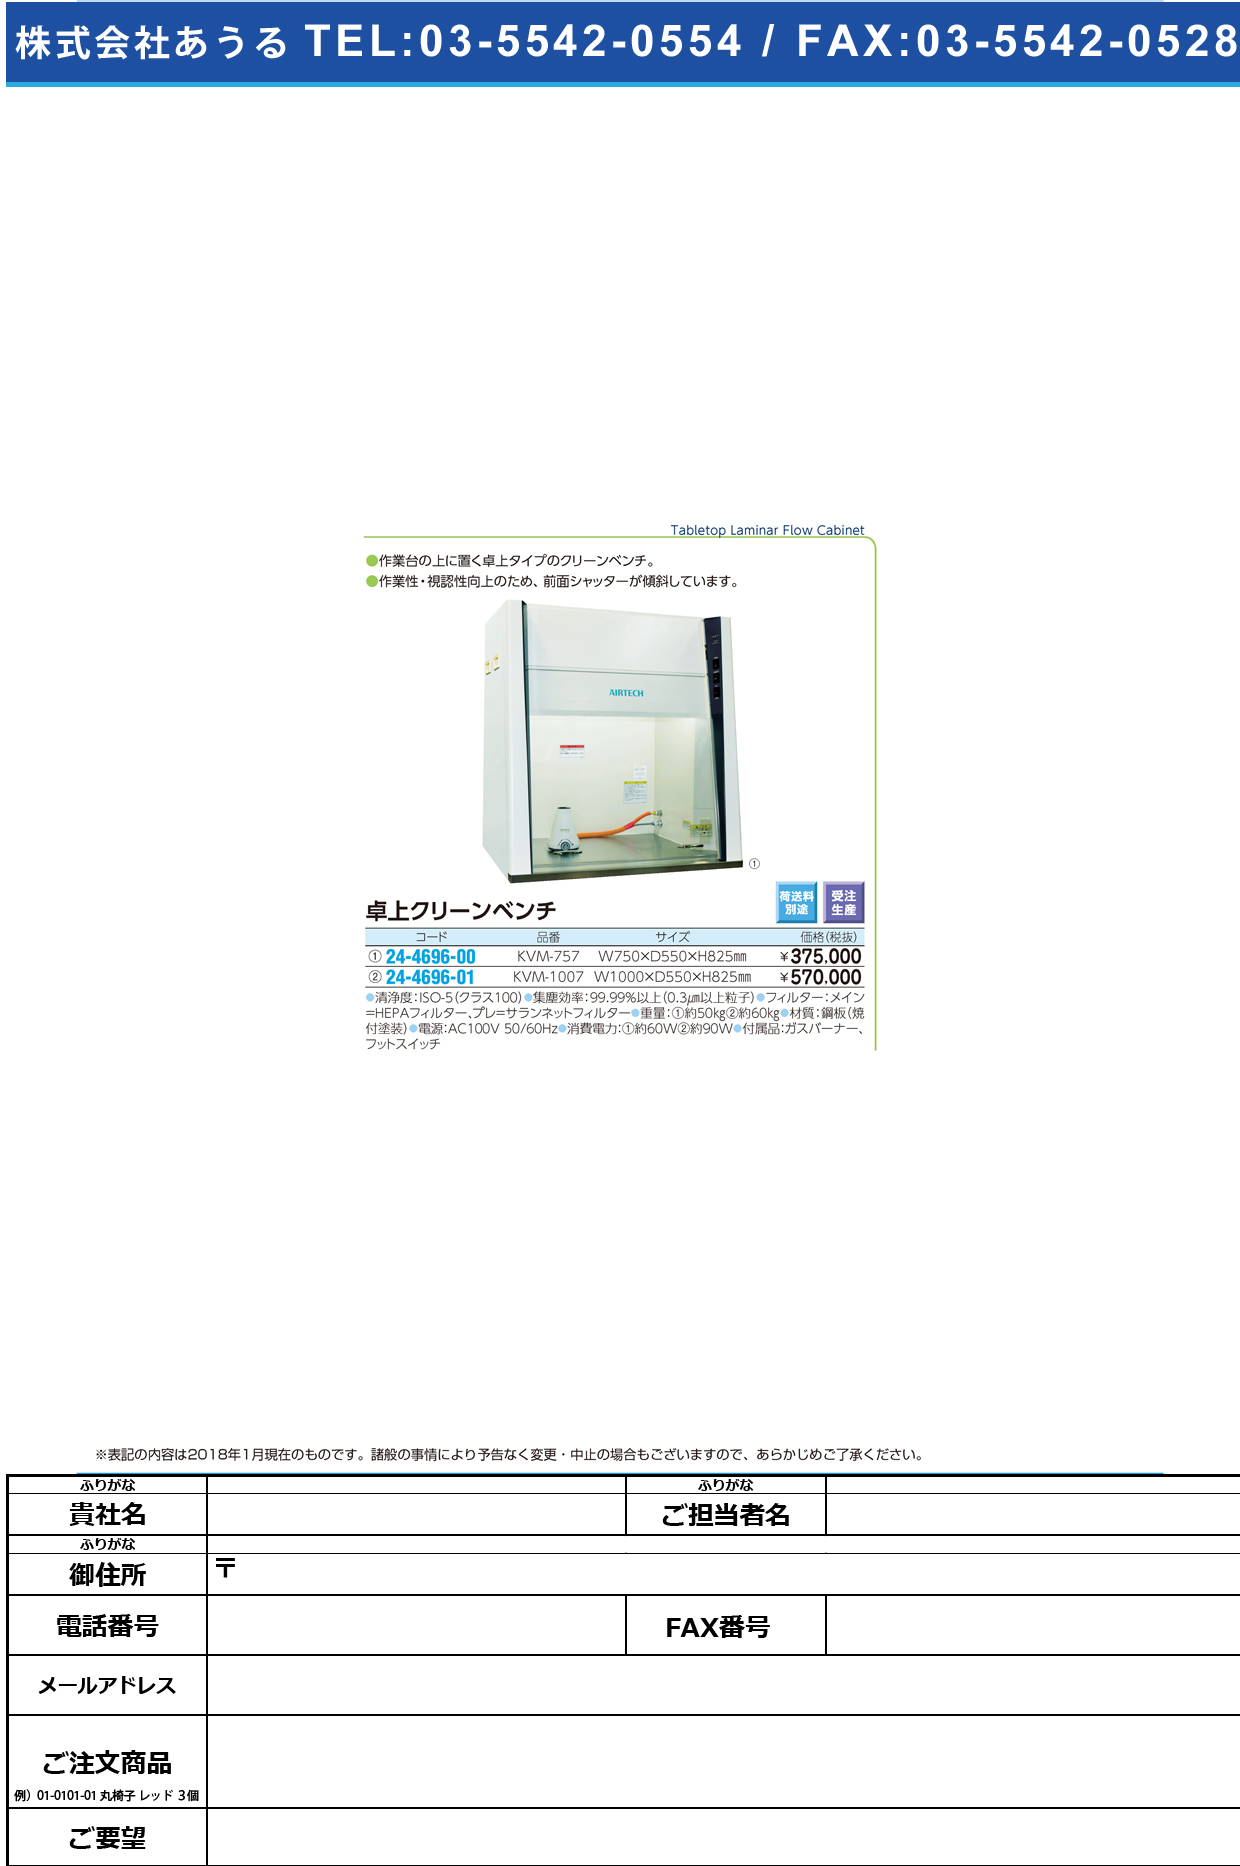 (24-4696-01)卓上クリーンベンチ KVM-1007 ﾀｸｼﾞｮｳｸﾘｰﾝﾍﾞﾝﾁ【1台単位】【2018年カタログ商品】